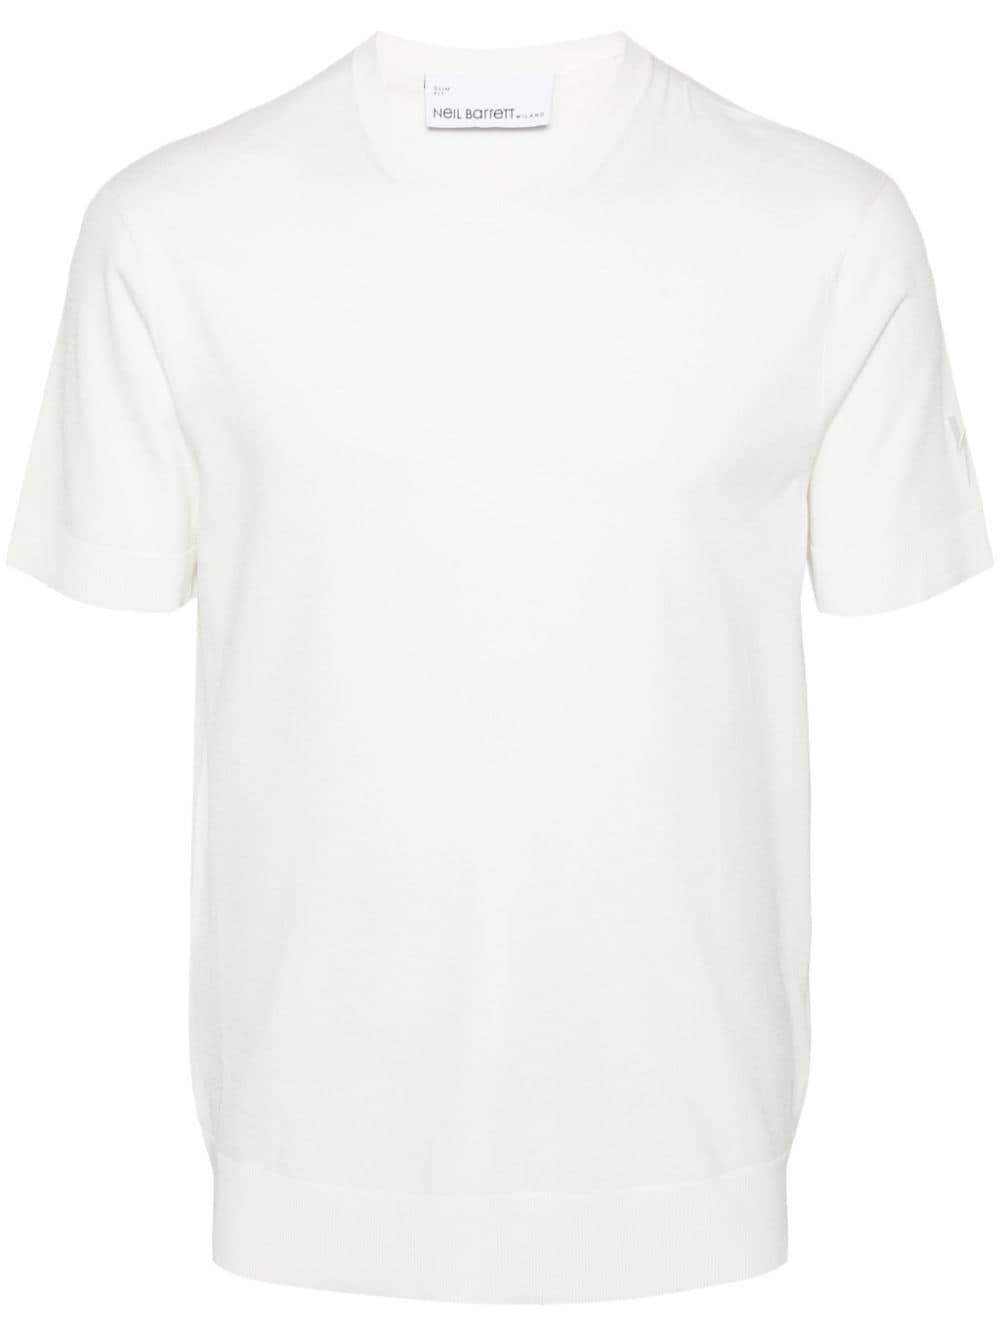 Neil Barrett short-sleeve knitted T-shirt - White von Neil Barrett